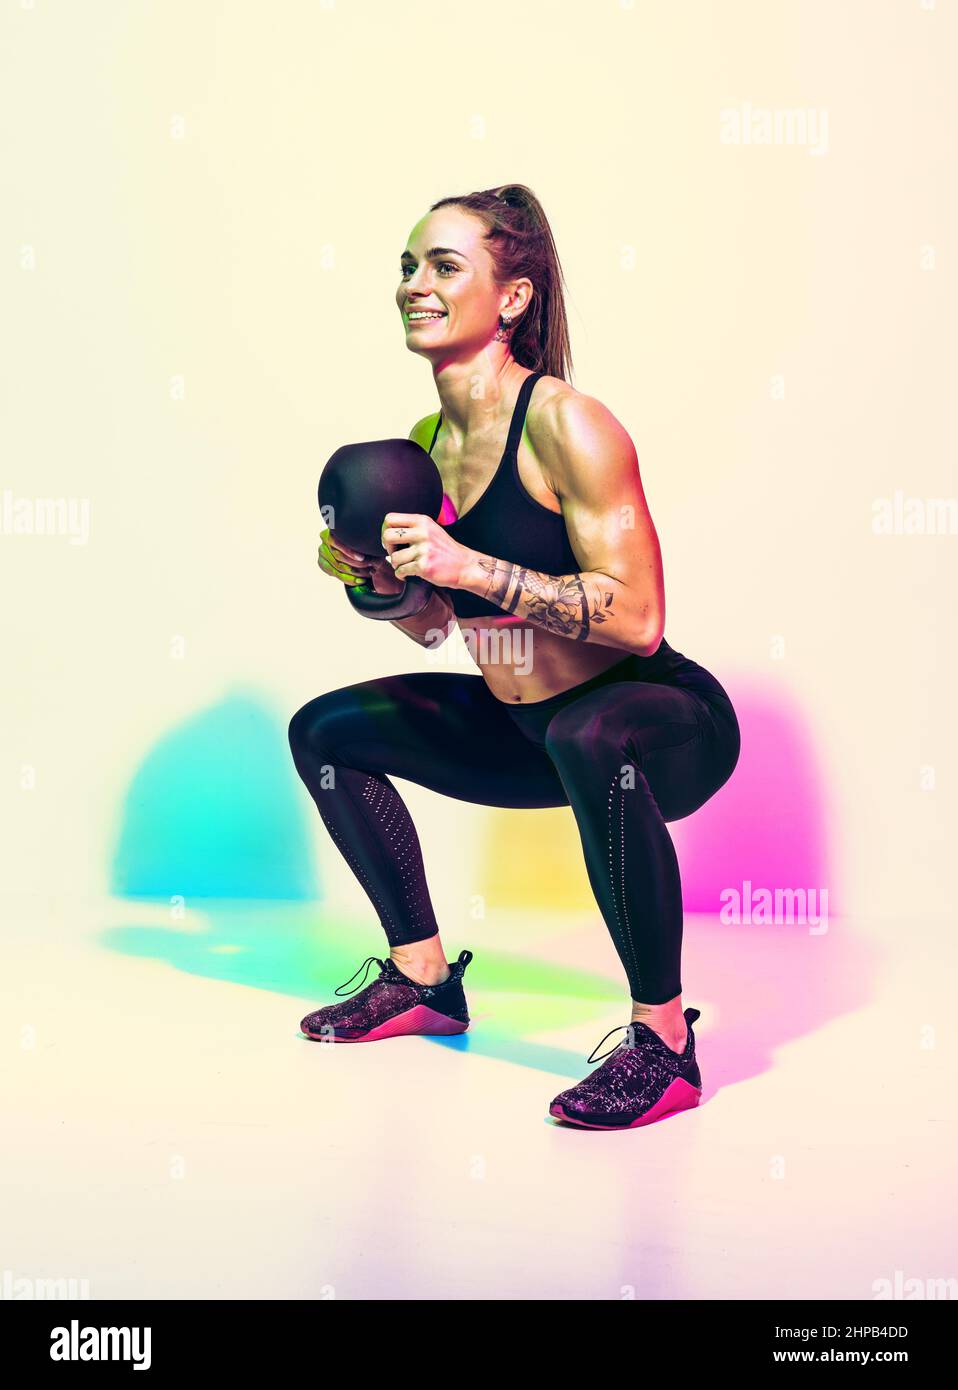 Sportliche Frau macht tiefe Kniebeugen Übung mit Kettlebell. Foto von Frau in schwarzer Sportkleidung auf weißem Hintergrund mit Effekt von rgb-Farben Schatten. Str Stockfoto